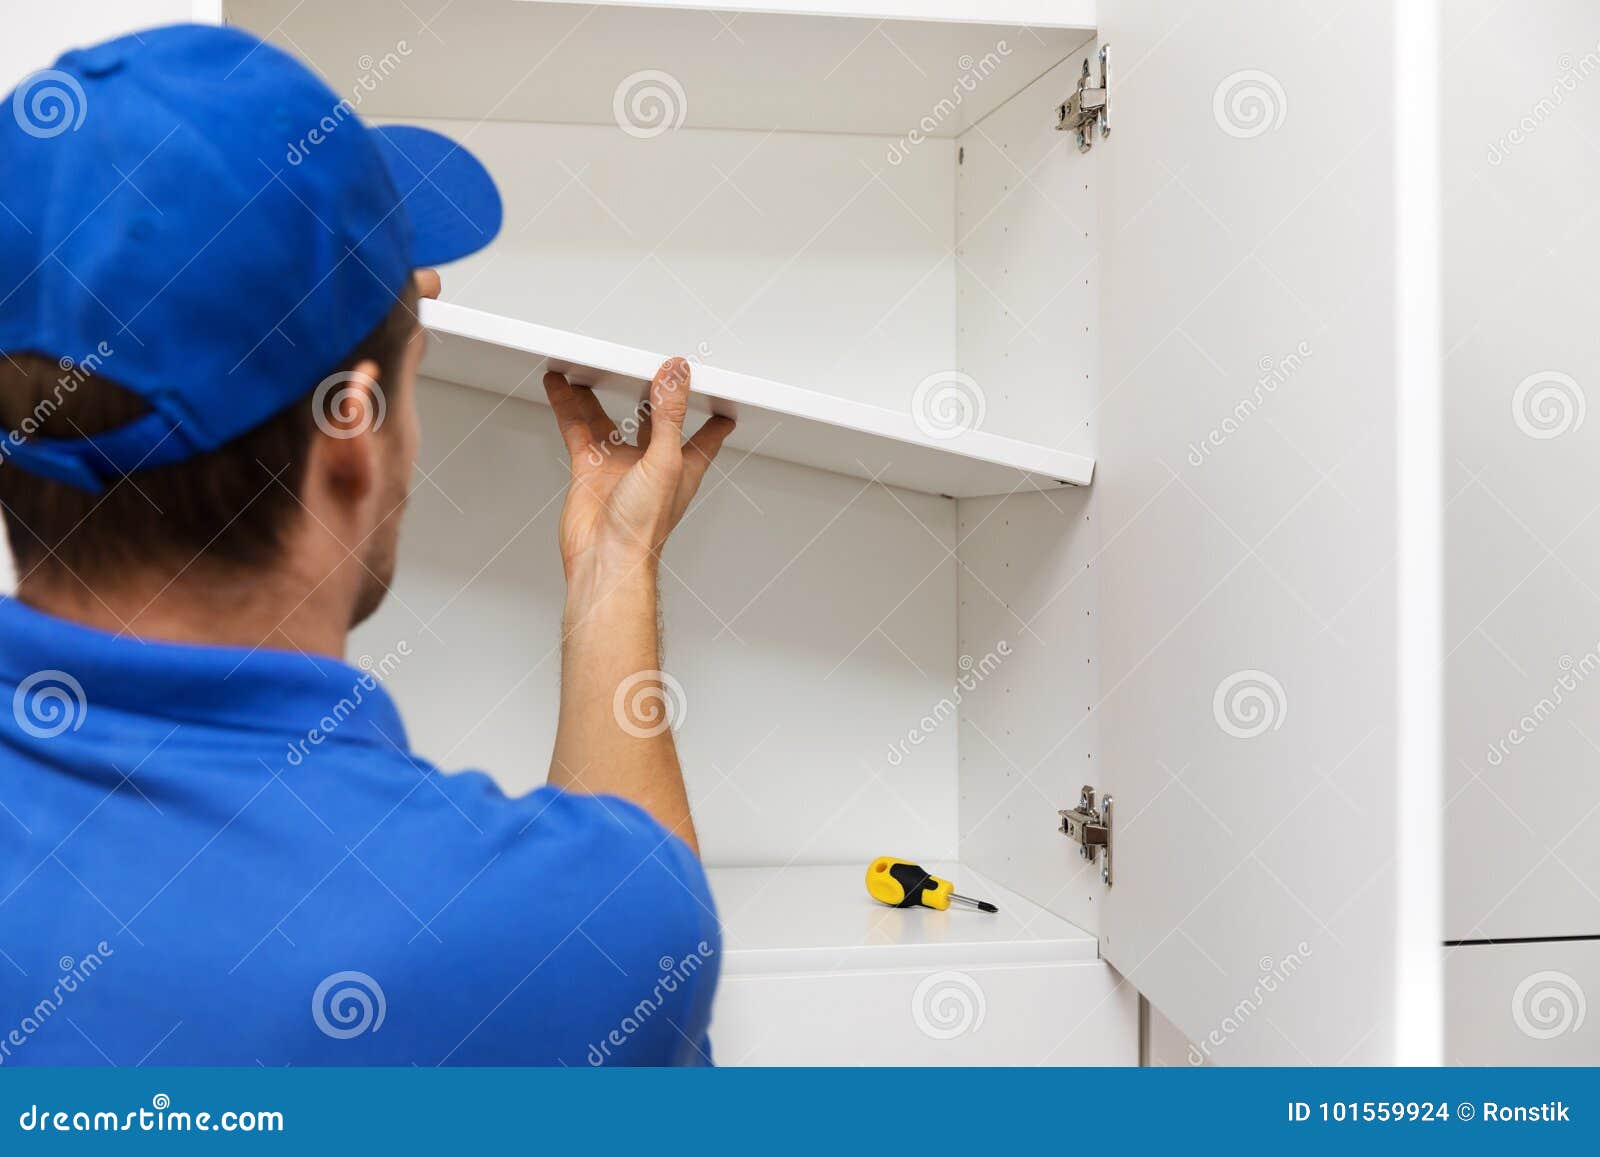 furniture assembly - worker installing cabinet shelf